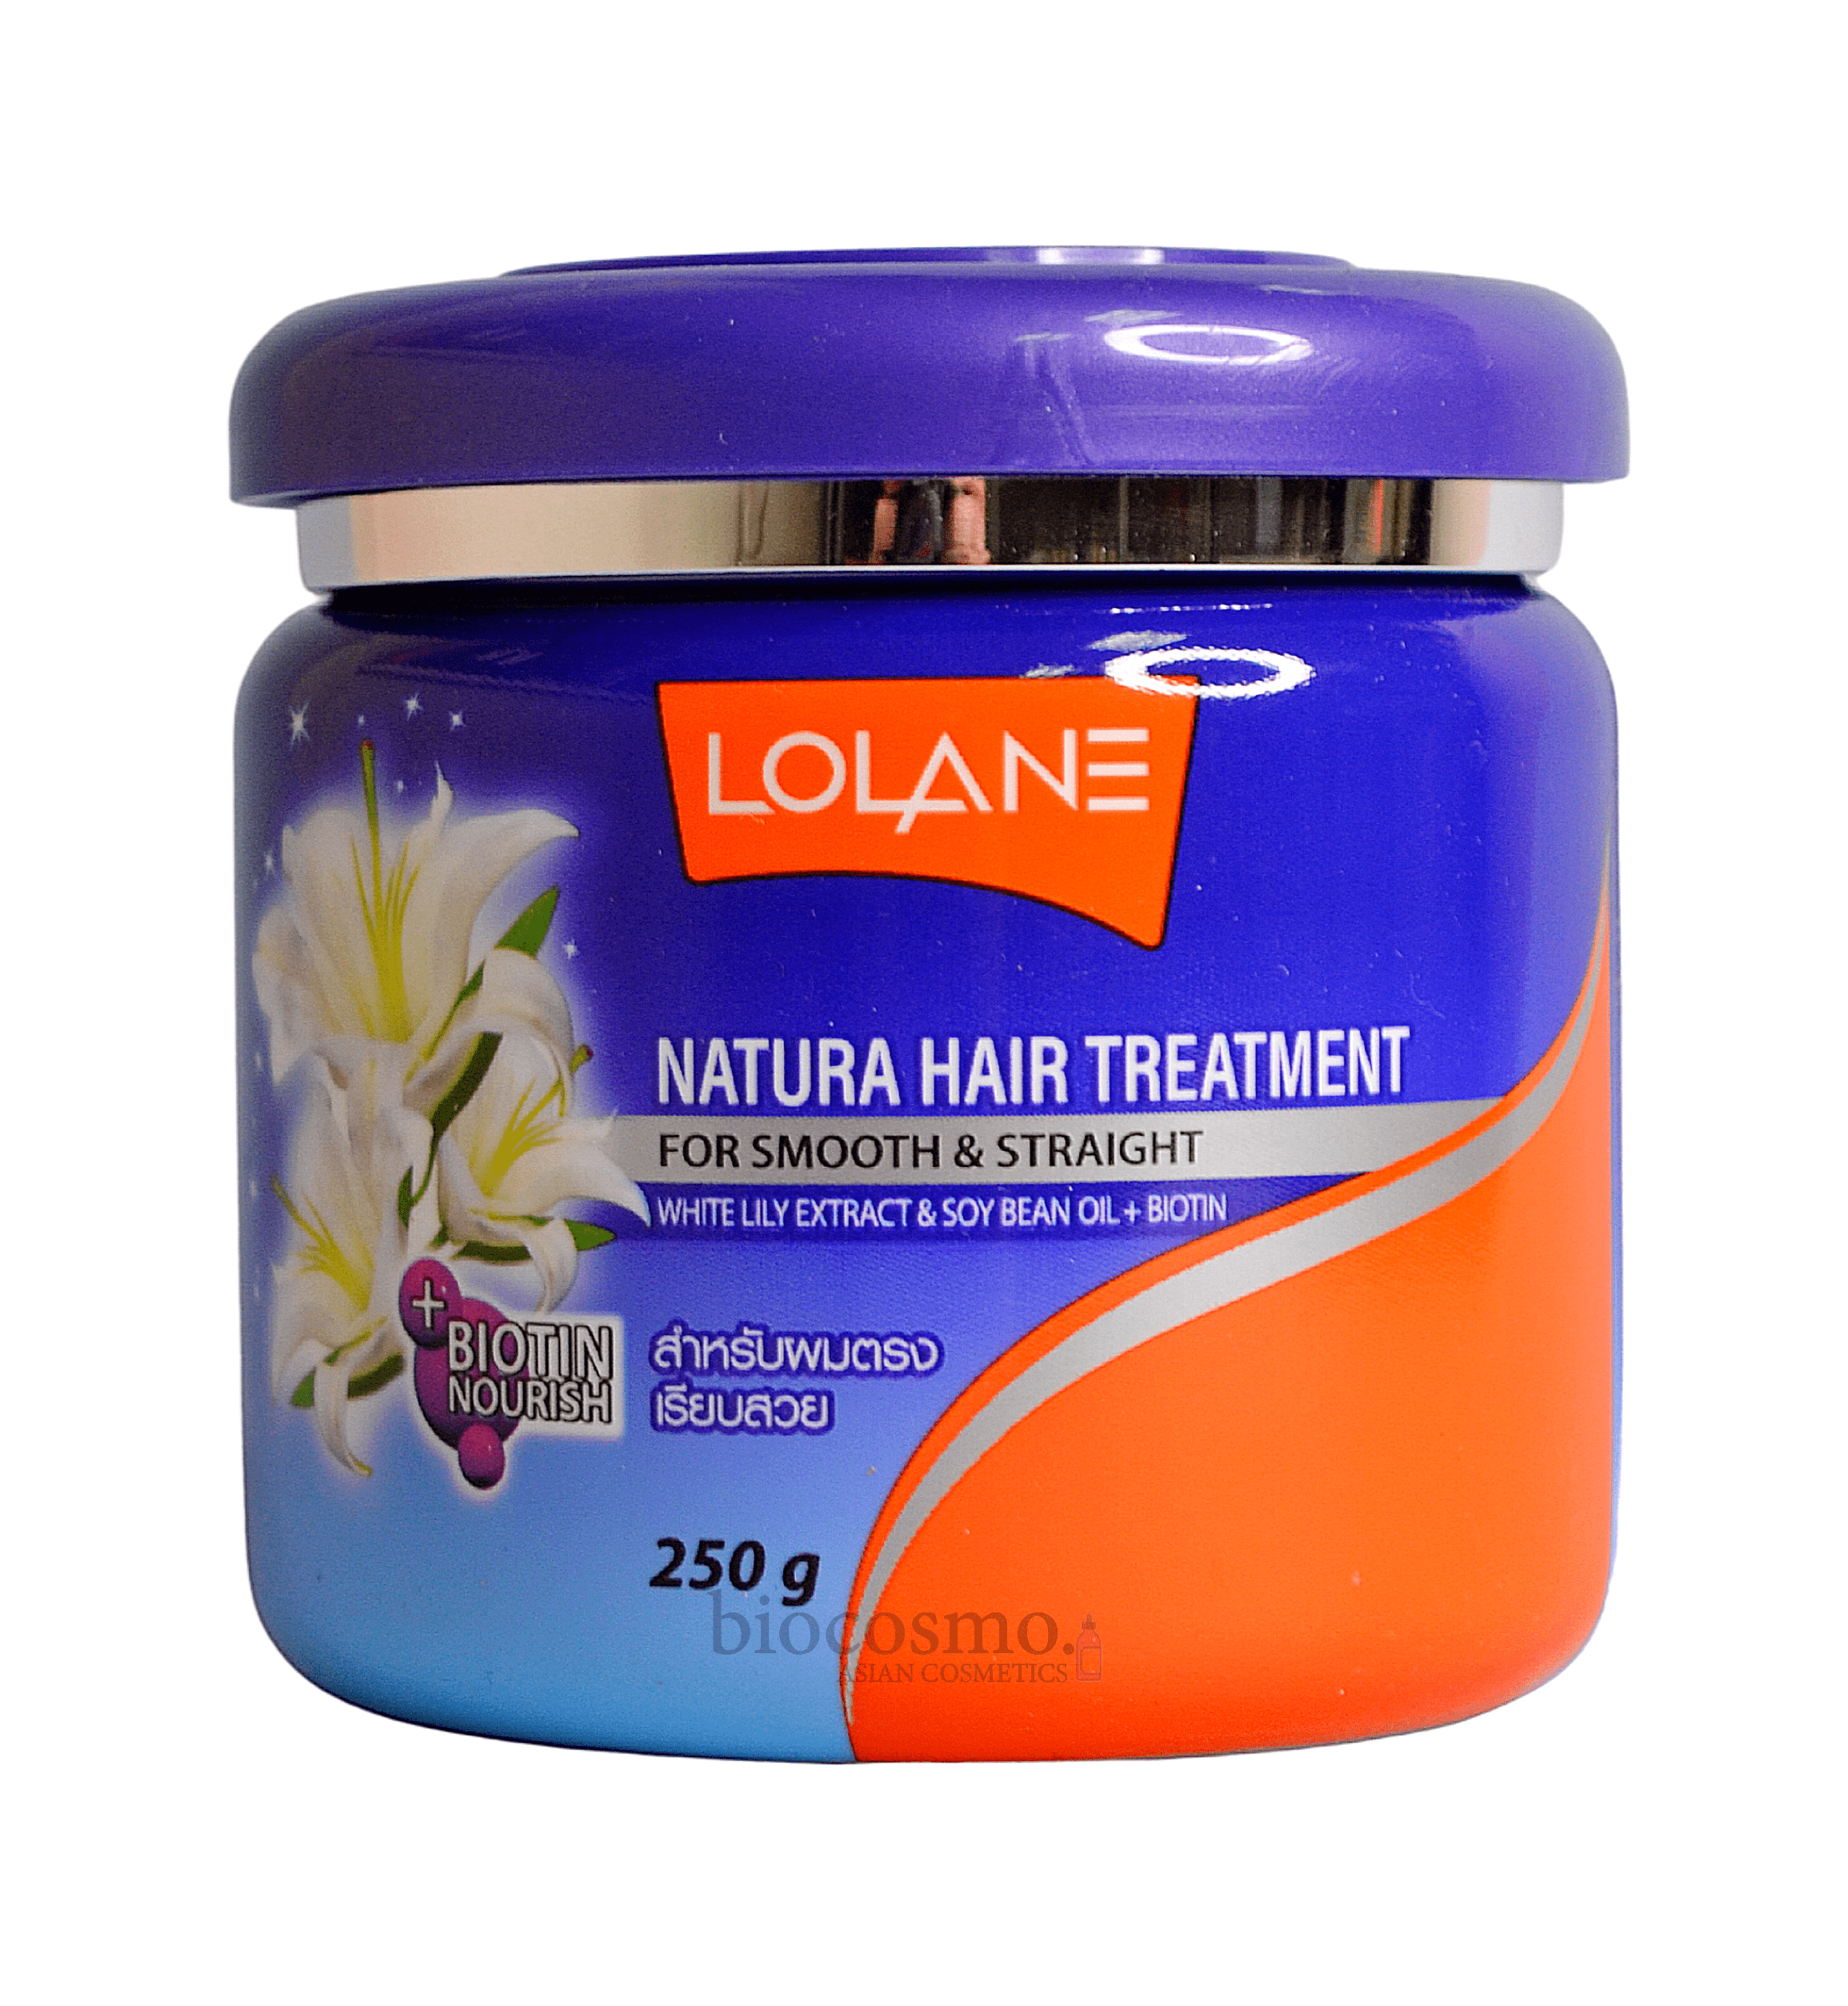 Маска для волос жожоба. Маски для волос Lolane Natura. Lolane Natura hair treatment. Маска для волос Lolane Natura hair treatment. Маска для волос с экстрактом белой лилии, 250 мл, Lolane.